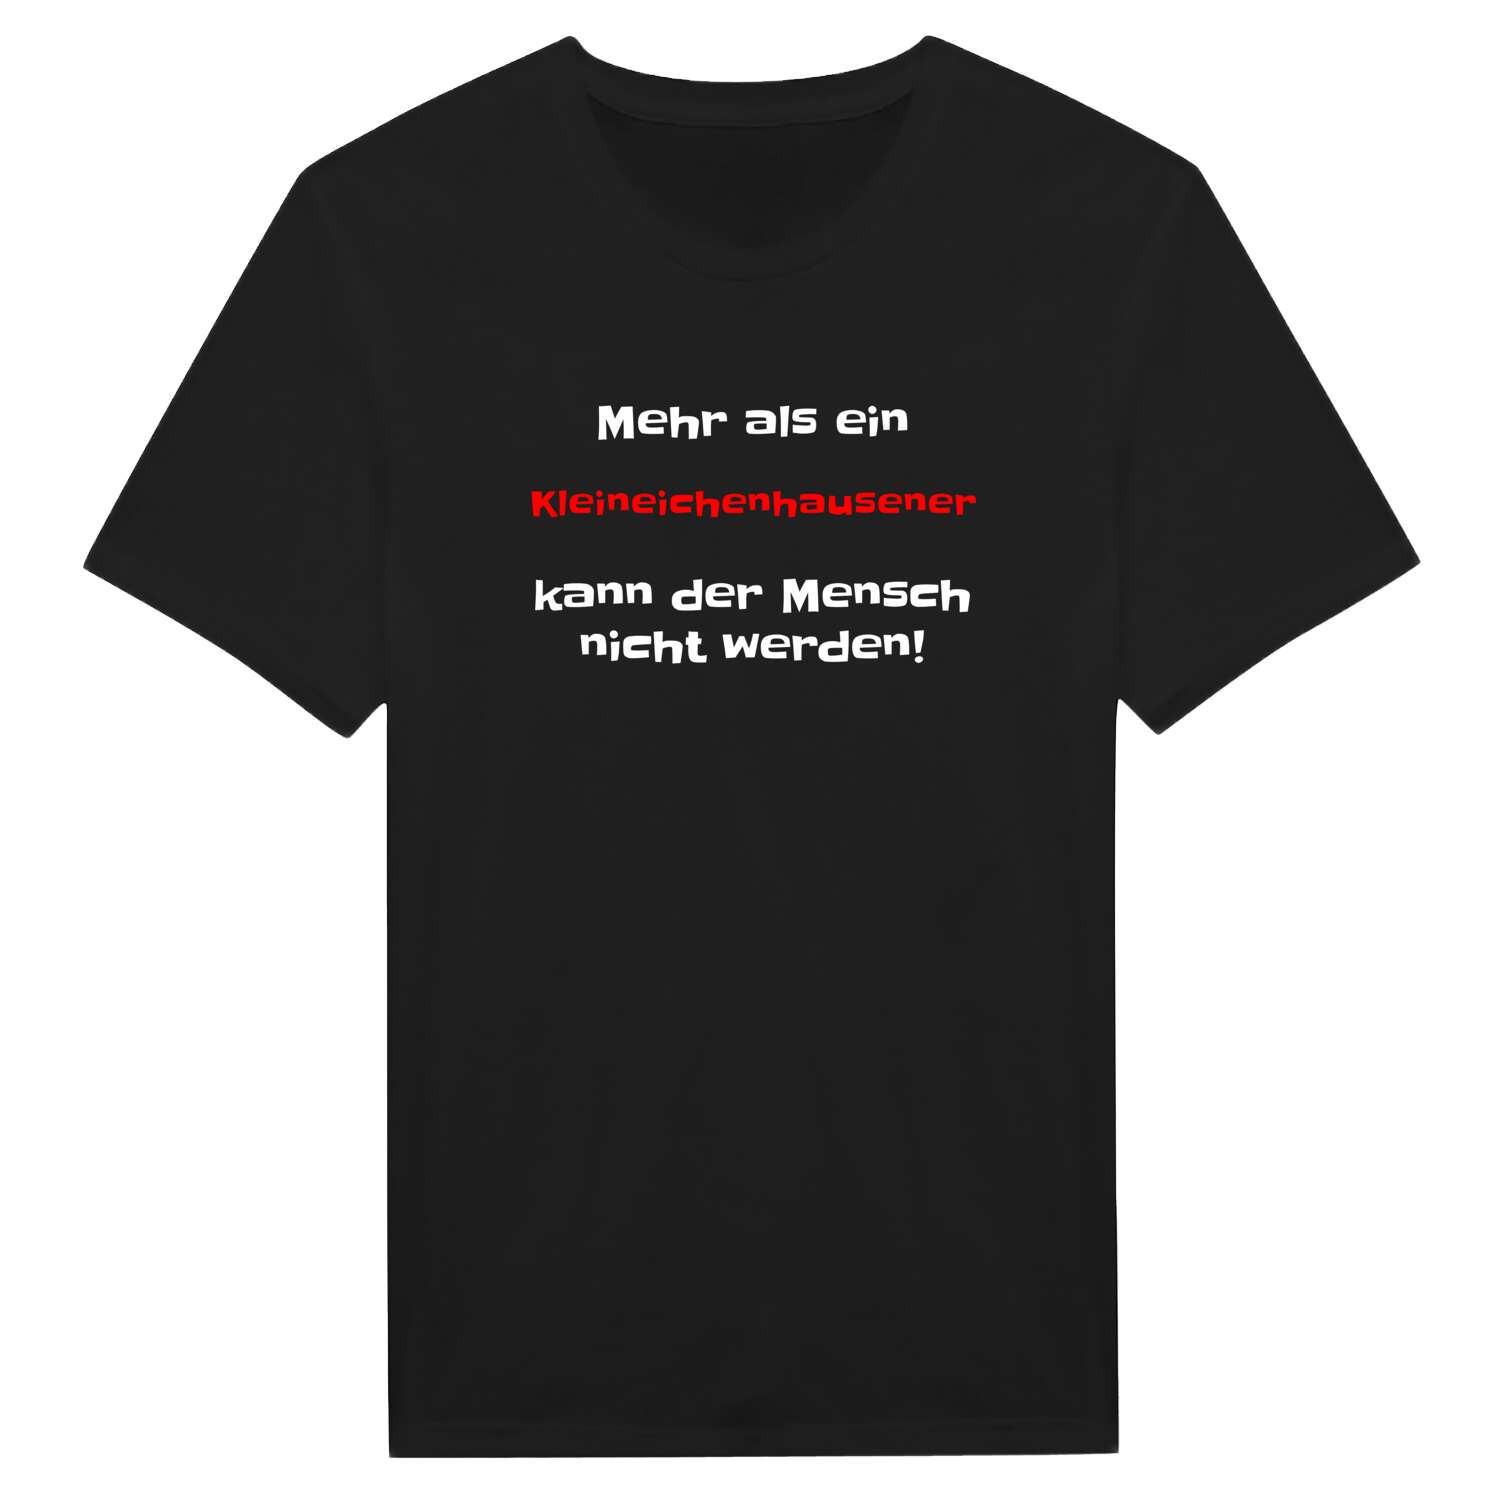 Kleineichenhausen T-Shirt »Mehr als ein«